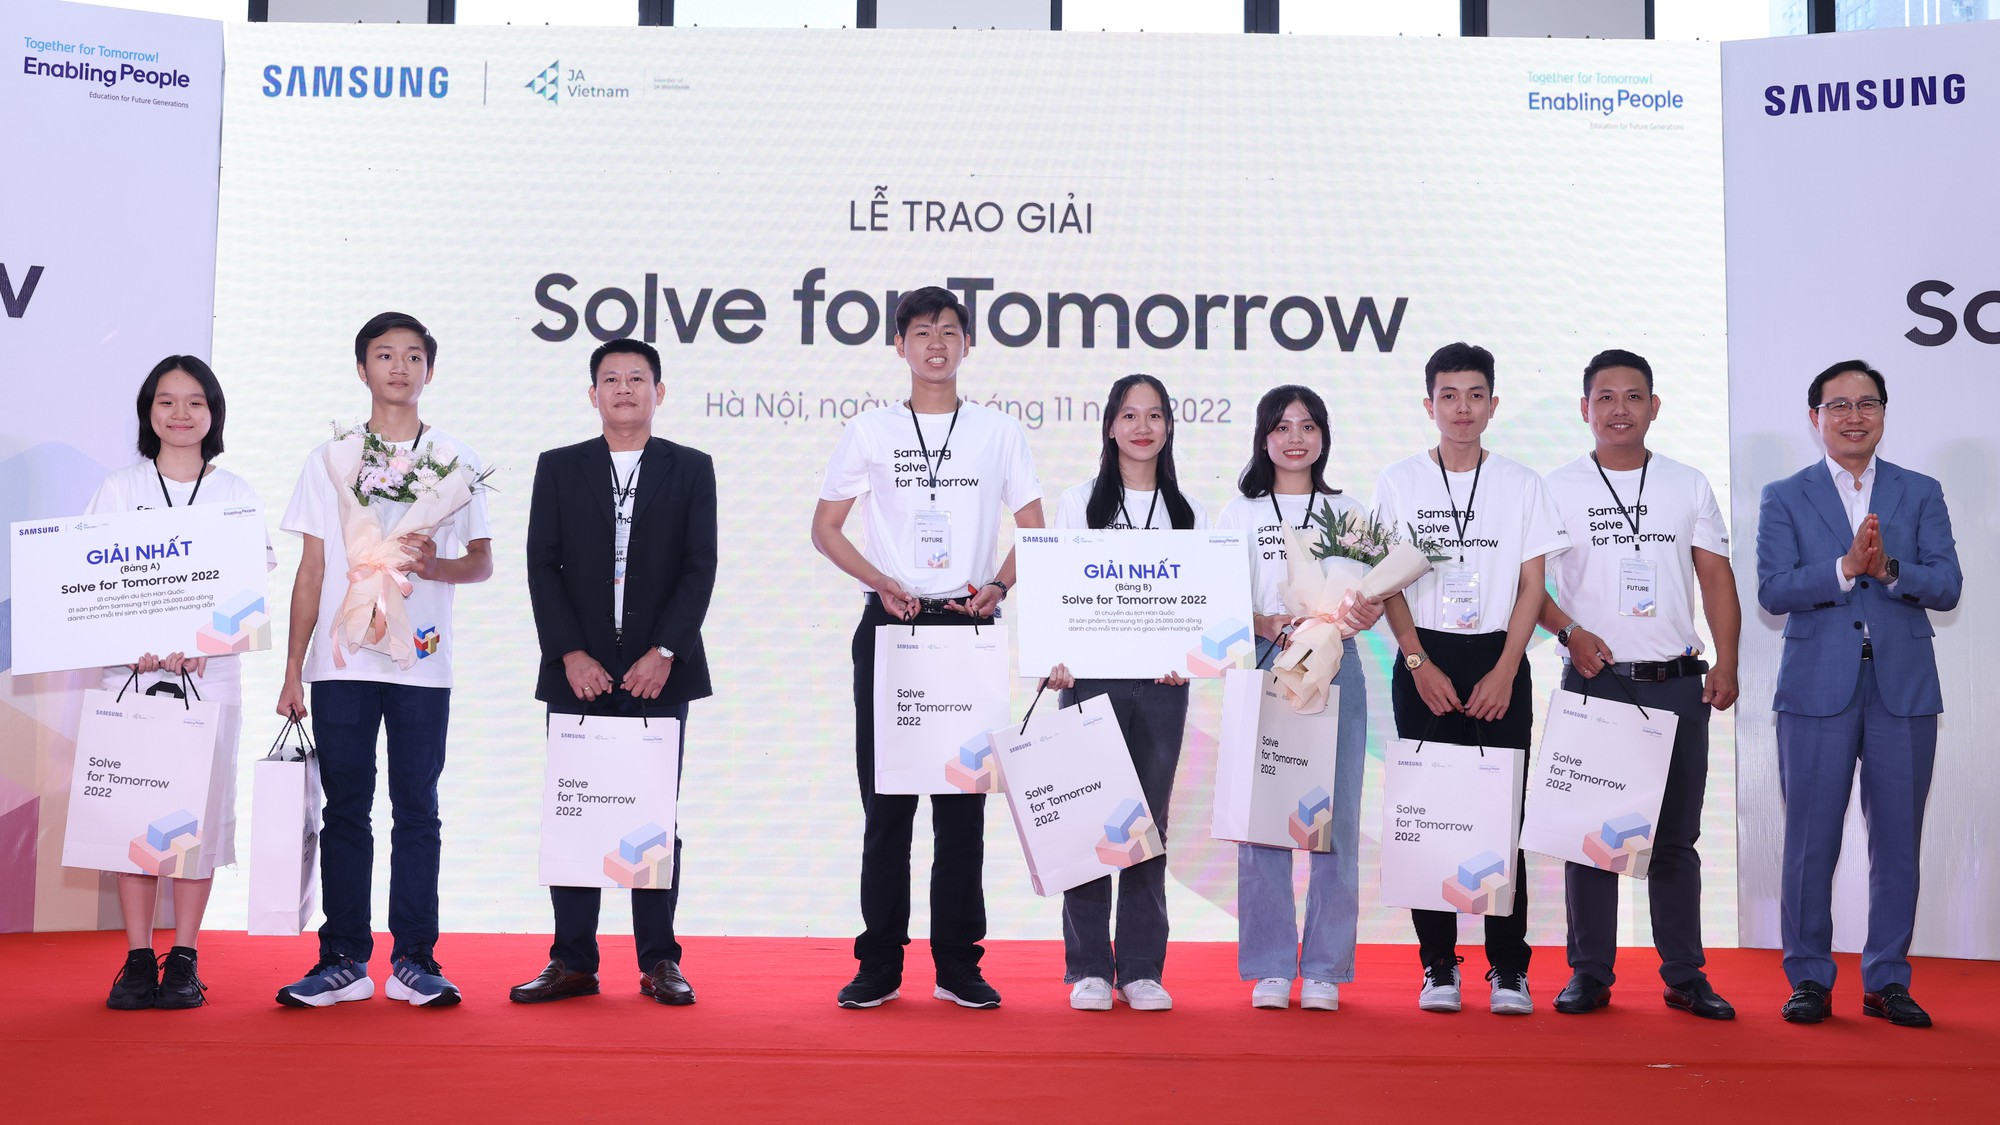 Ý tưởng “Quản lý thư viện” cùng “Giường bệnh IoT” của học sinh THCS & THPT Việt Nam đạt giải thưởng sáng tạo công nghệ đầy ý nghĩa - Ảnh 3.